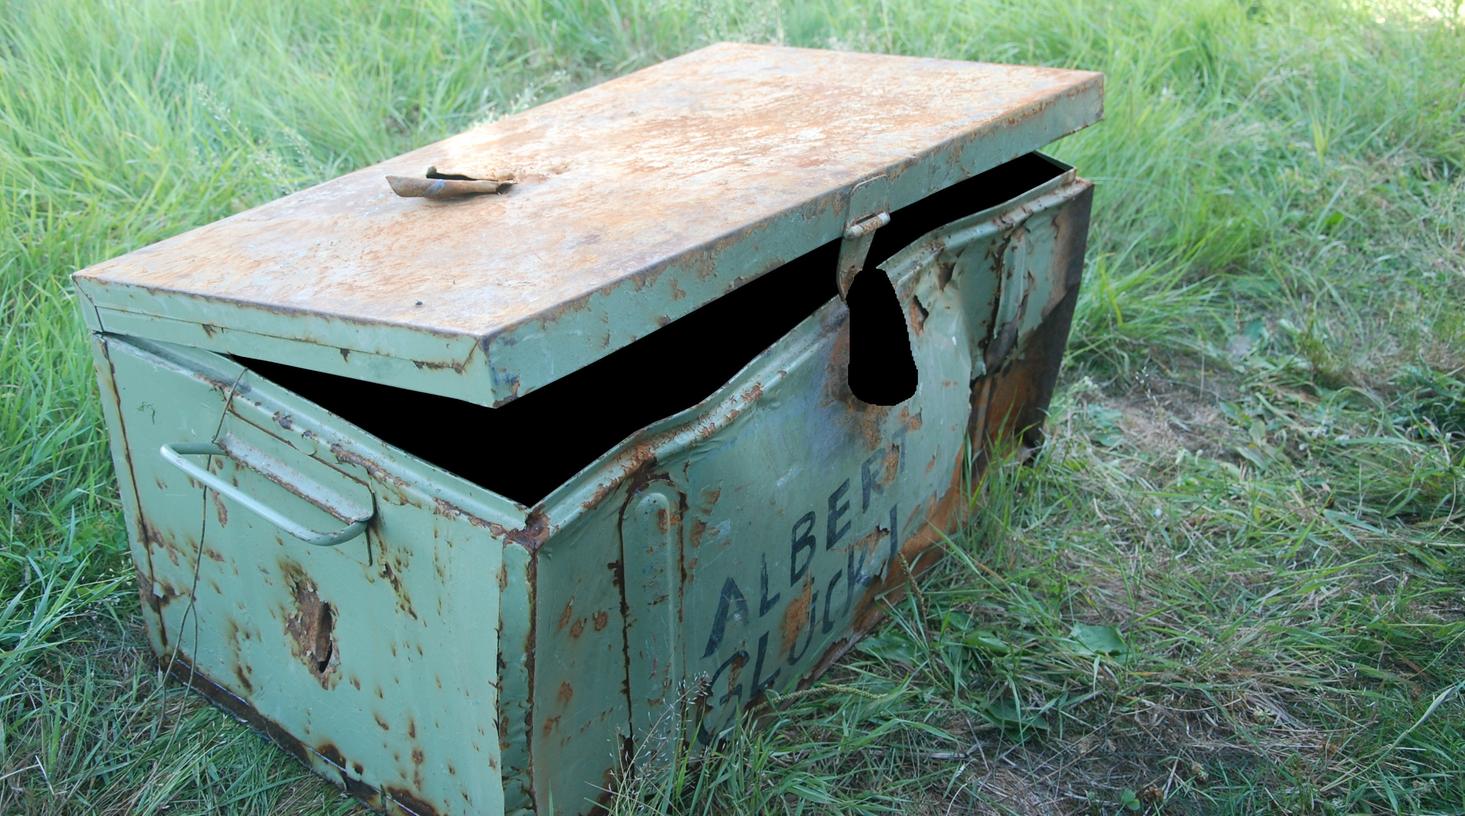 Leiche in Kiste auf der Elbe gefunden: Identität unklar